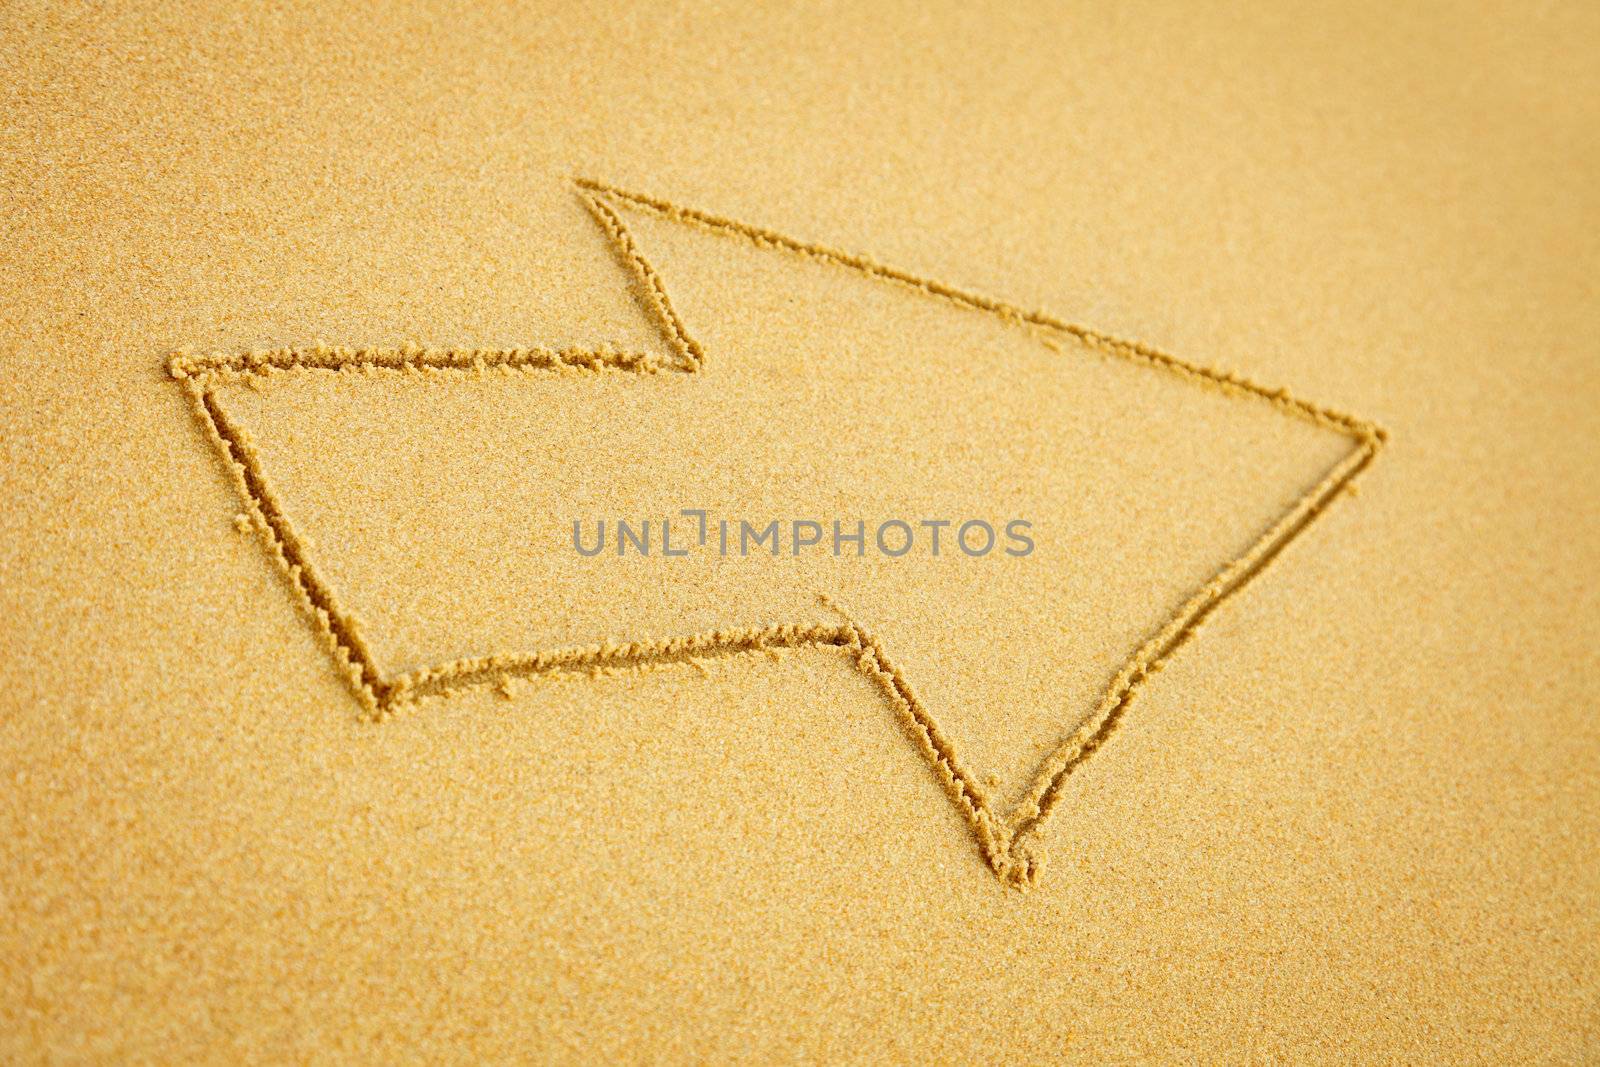 Arrow on beach sand by pzaxe